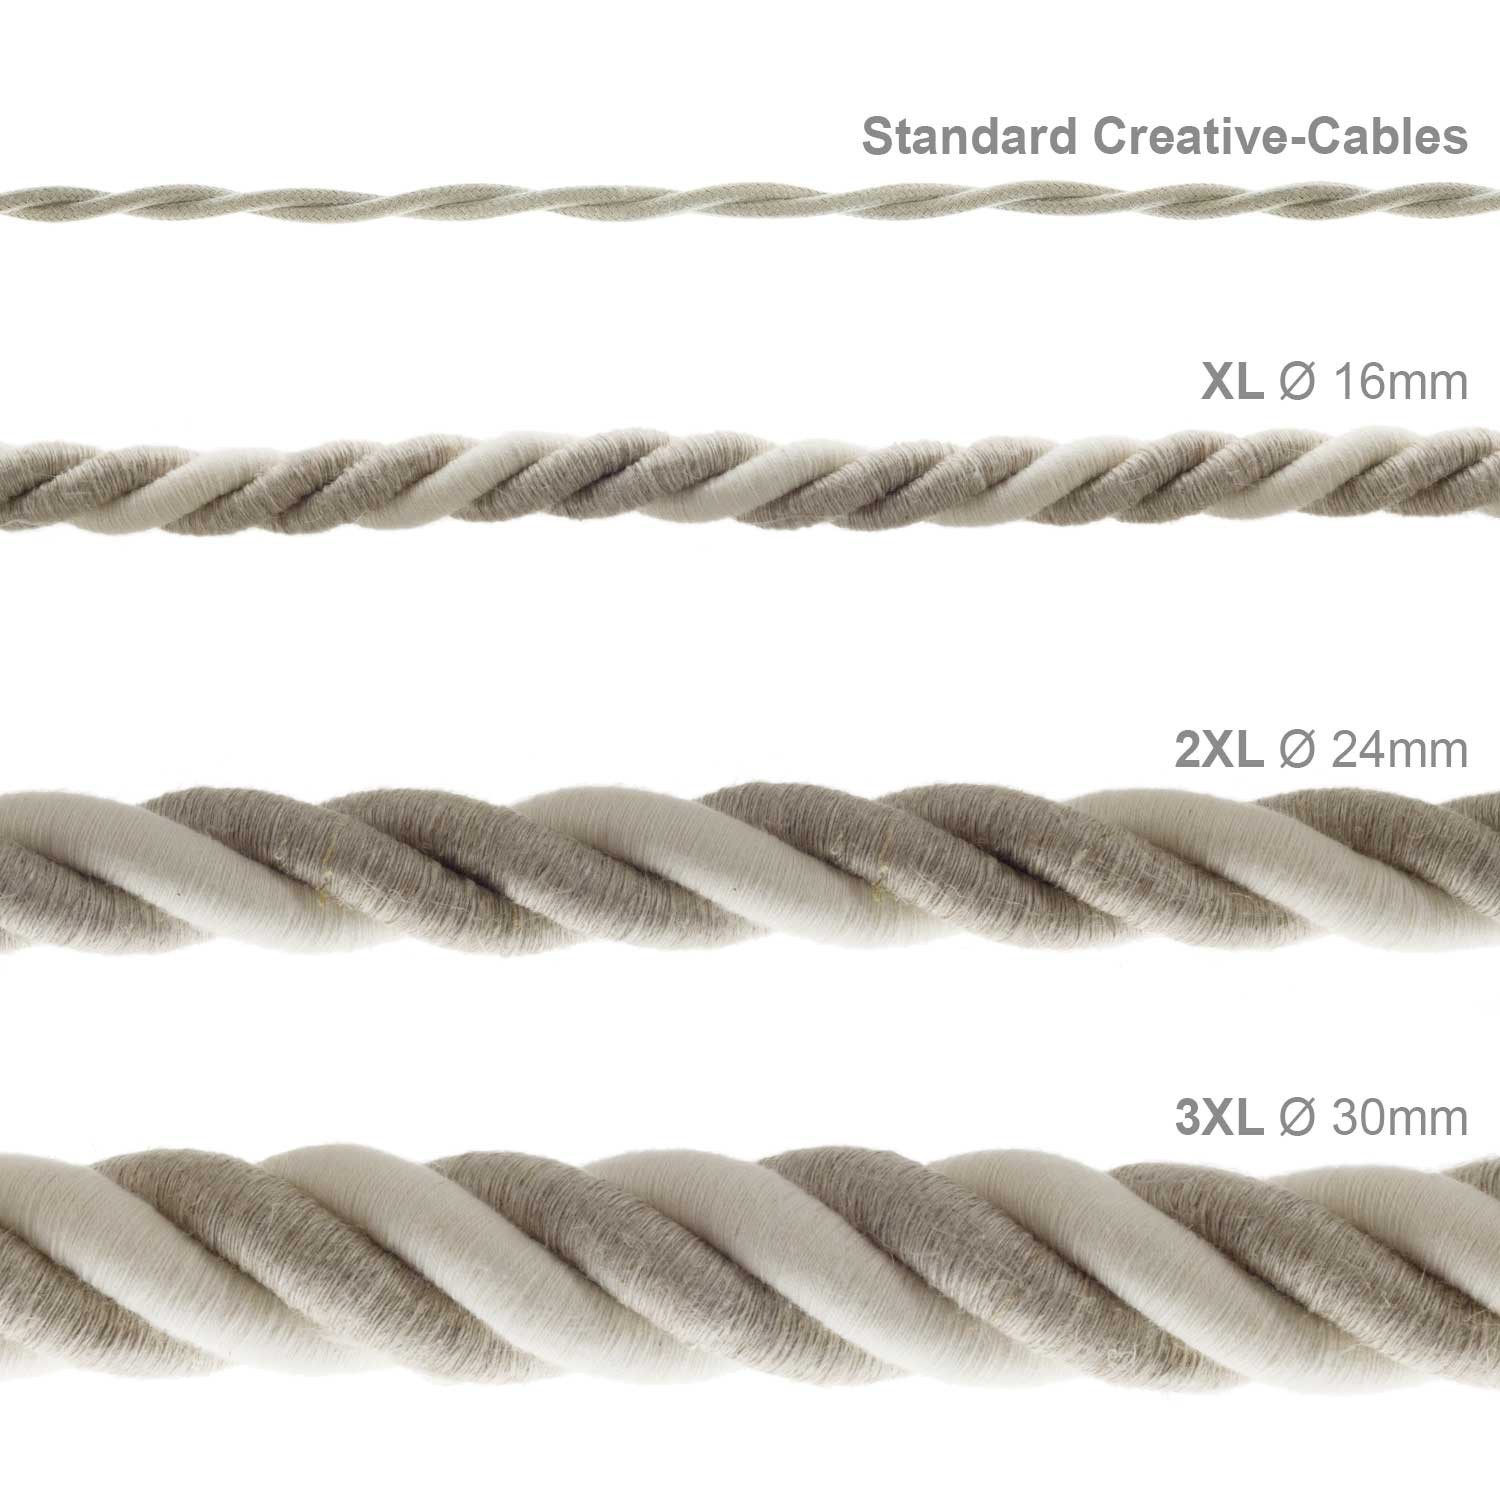 3XL električna vrv, električen kabel 3x0,75, prekrit z naravnim lanom in surovim bombažem. Premer 30mm.